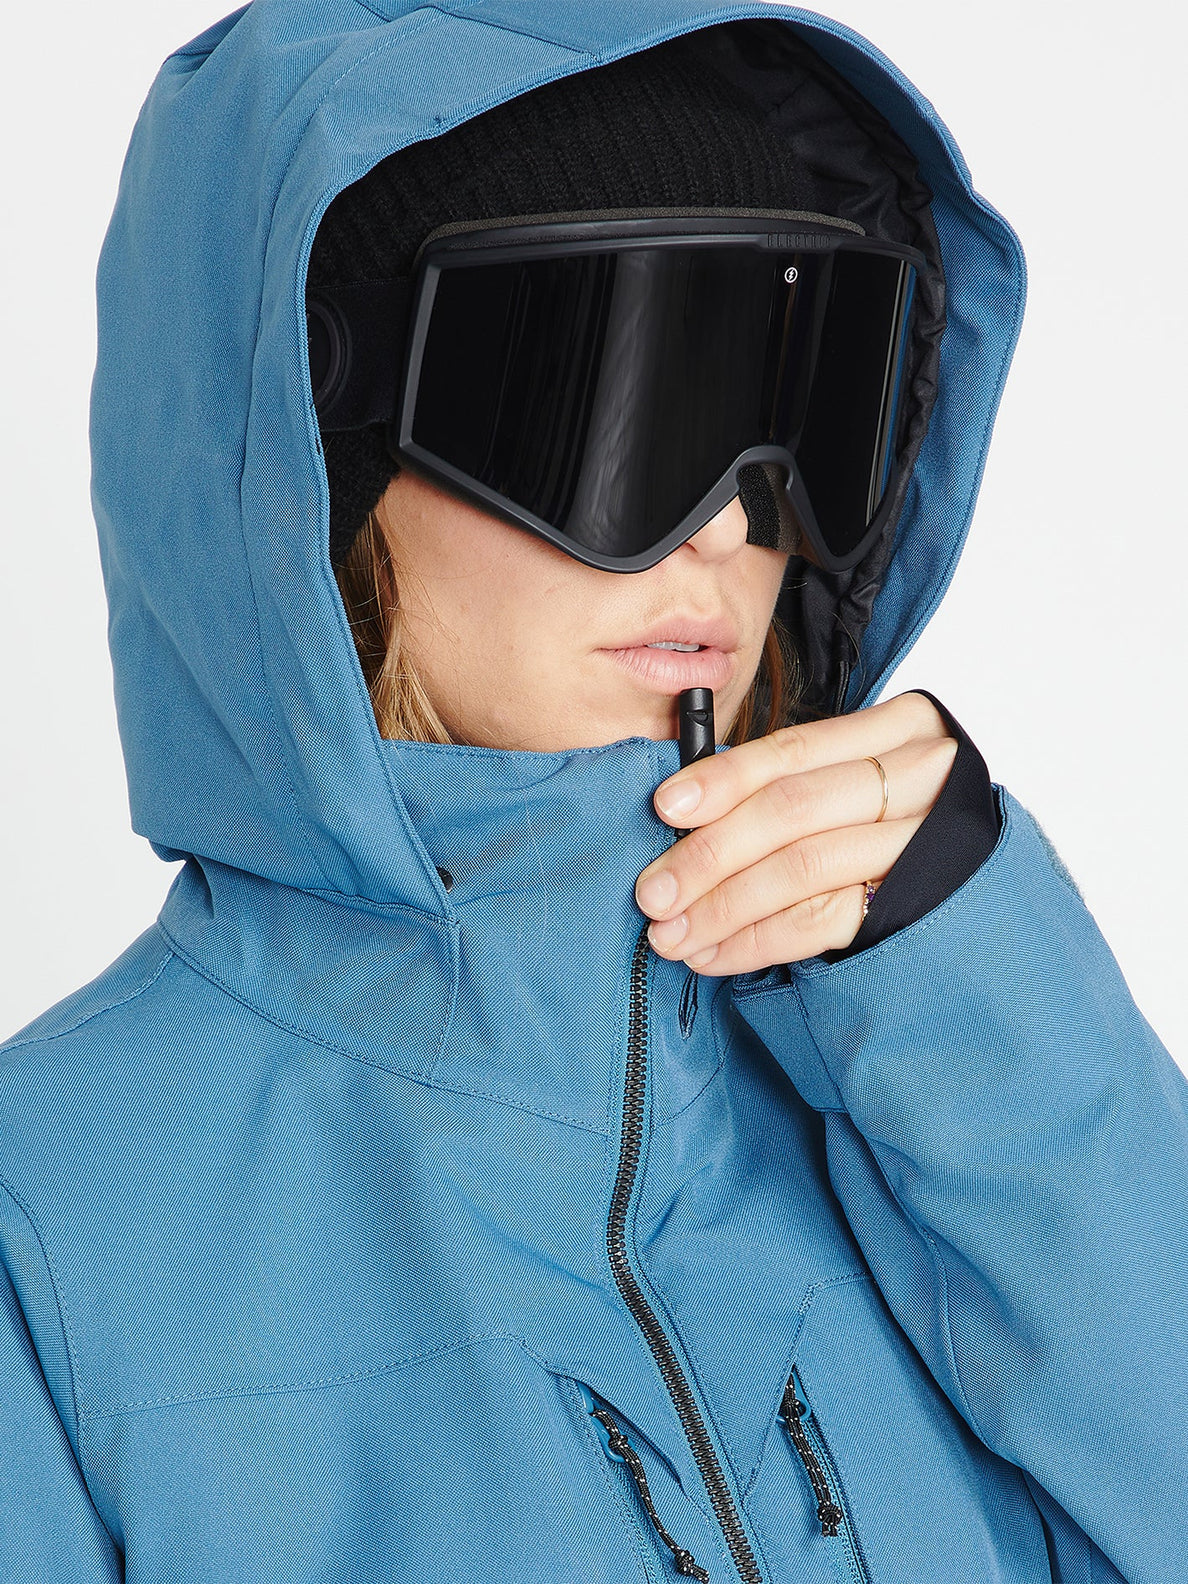 Chaqueta de snowboard Mujer Volcom Shelter 3D Stretch Jacket - Petrol Blue | surfdevils.com